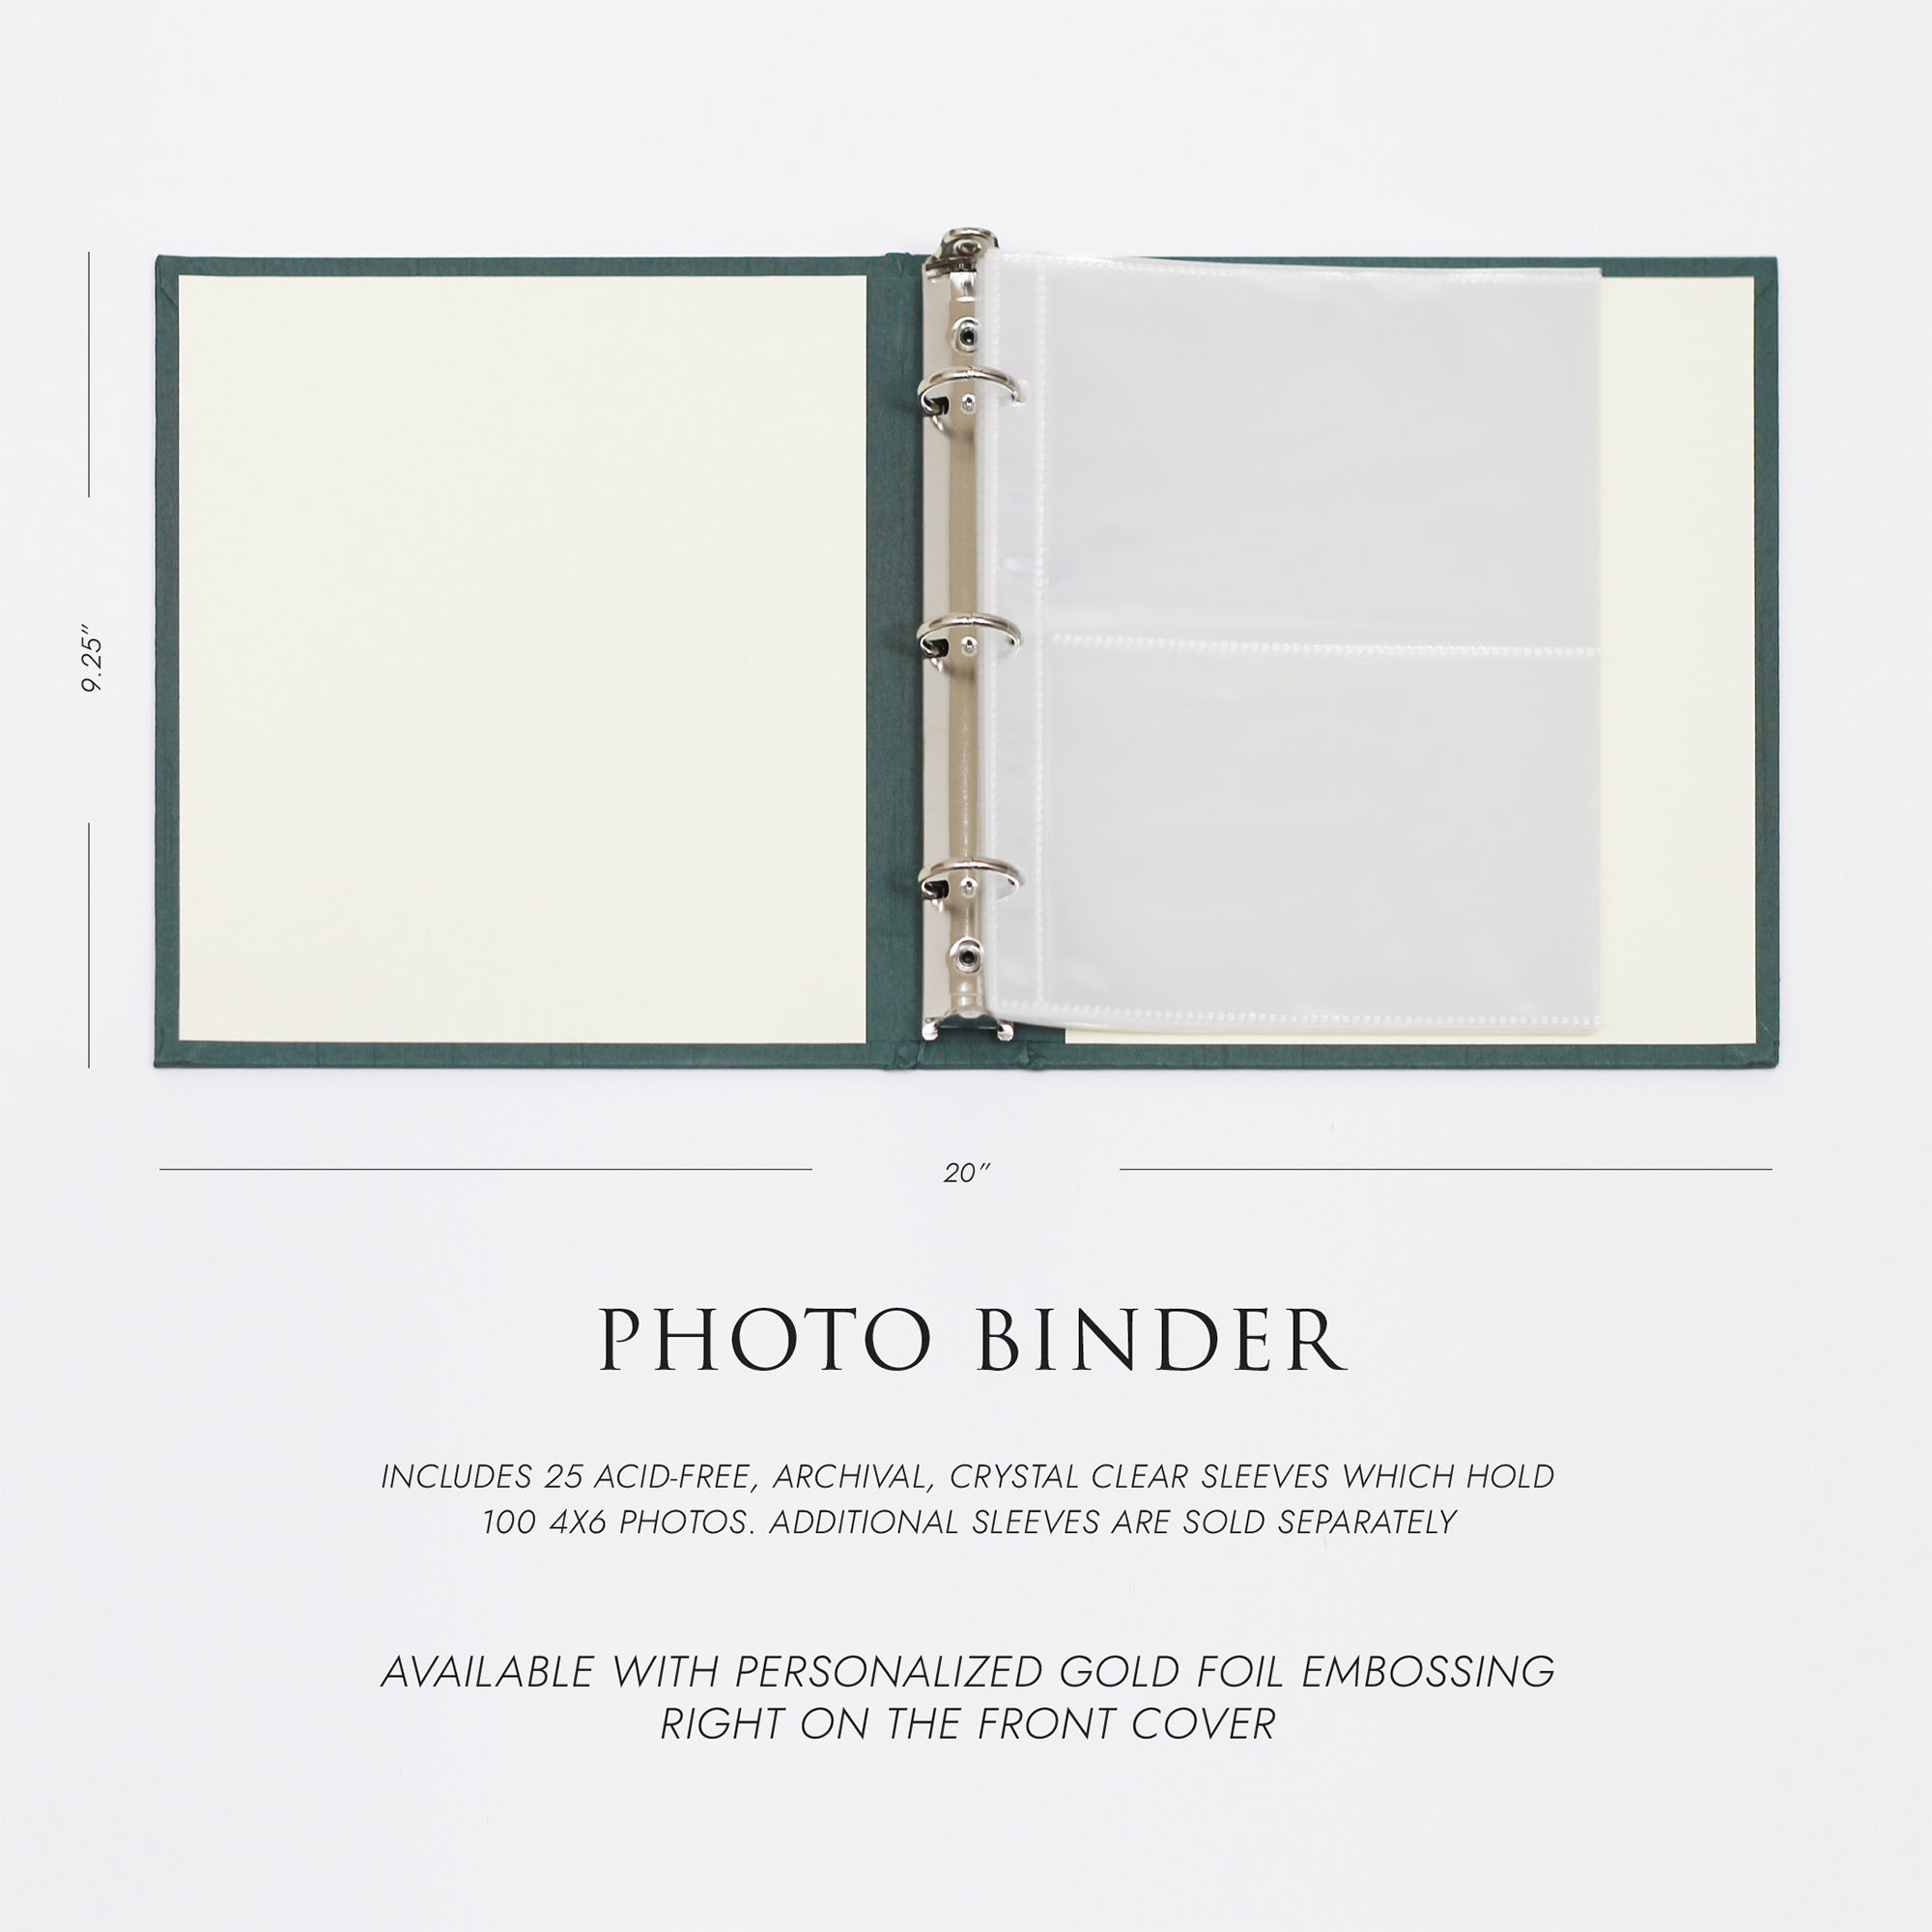 Medium Photo Binder For 4x6 Photos